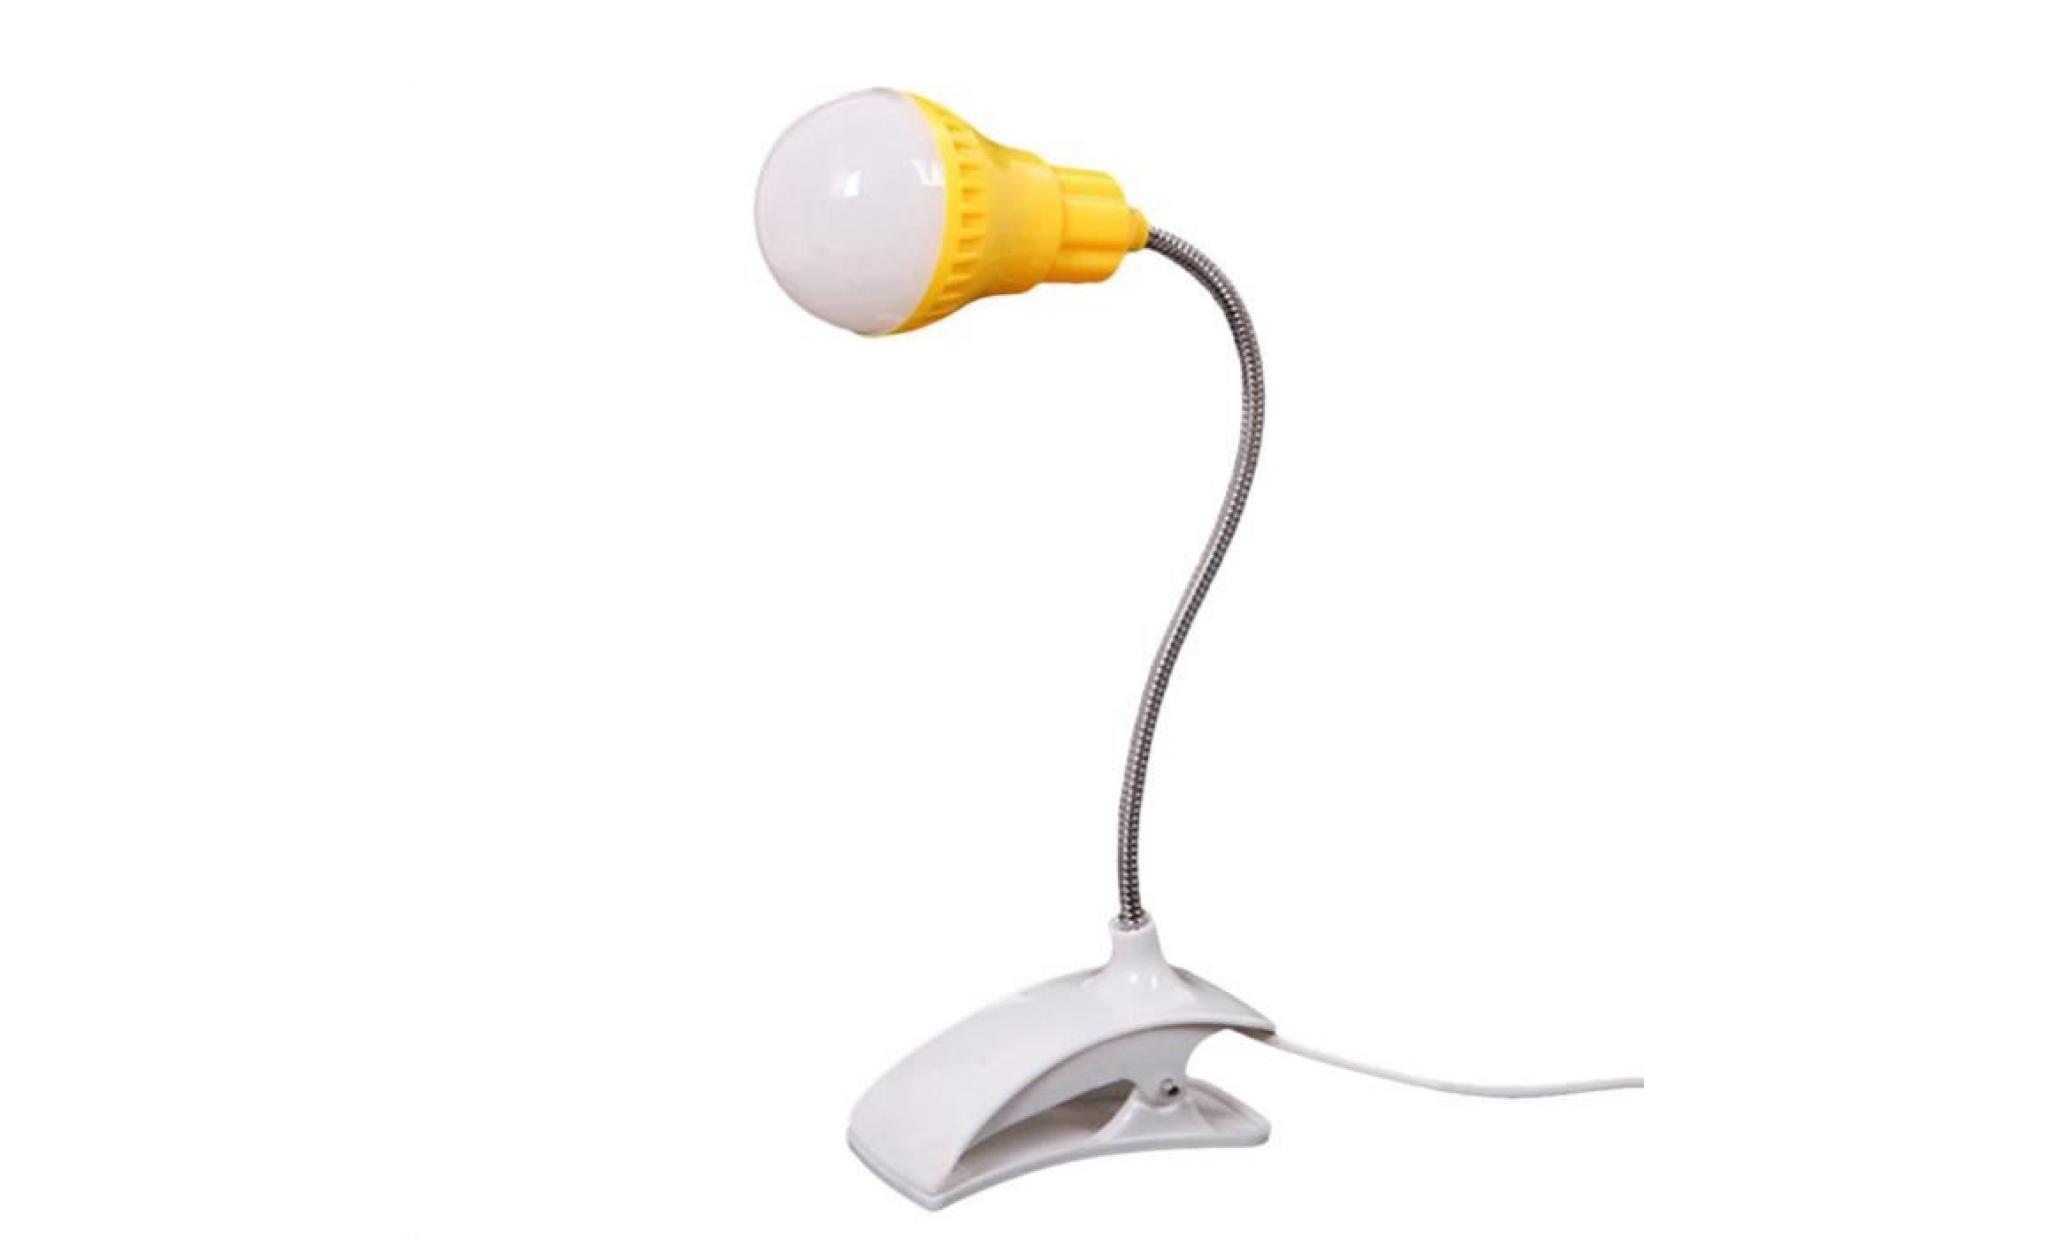 nouveau support de table lampe usb du personnel étudiant de lecture table bureau lampe wh @ww1892 pas cher